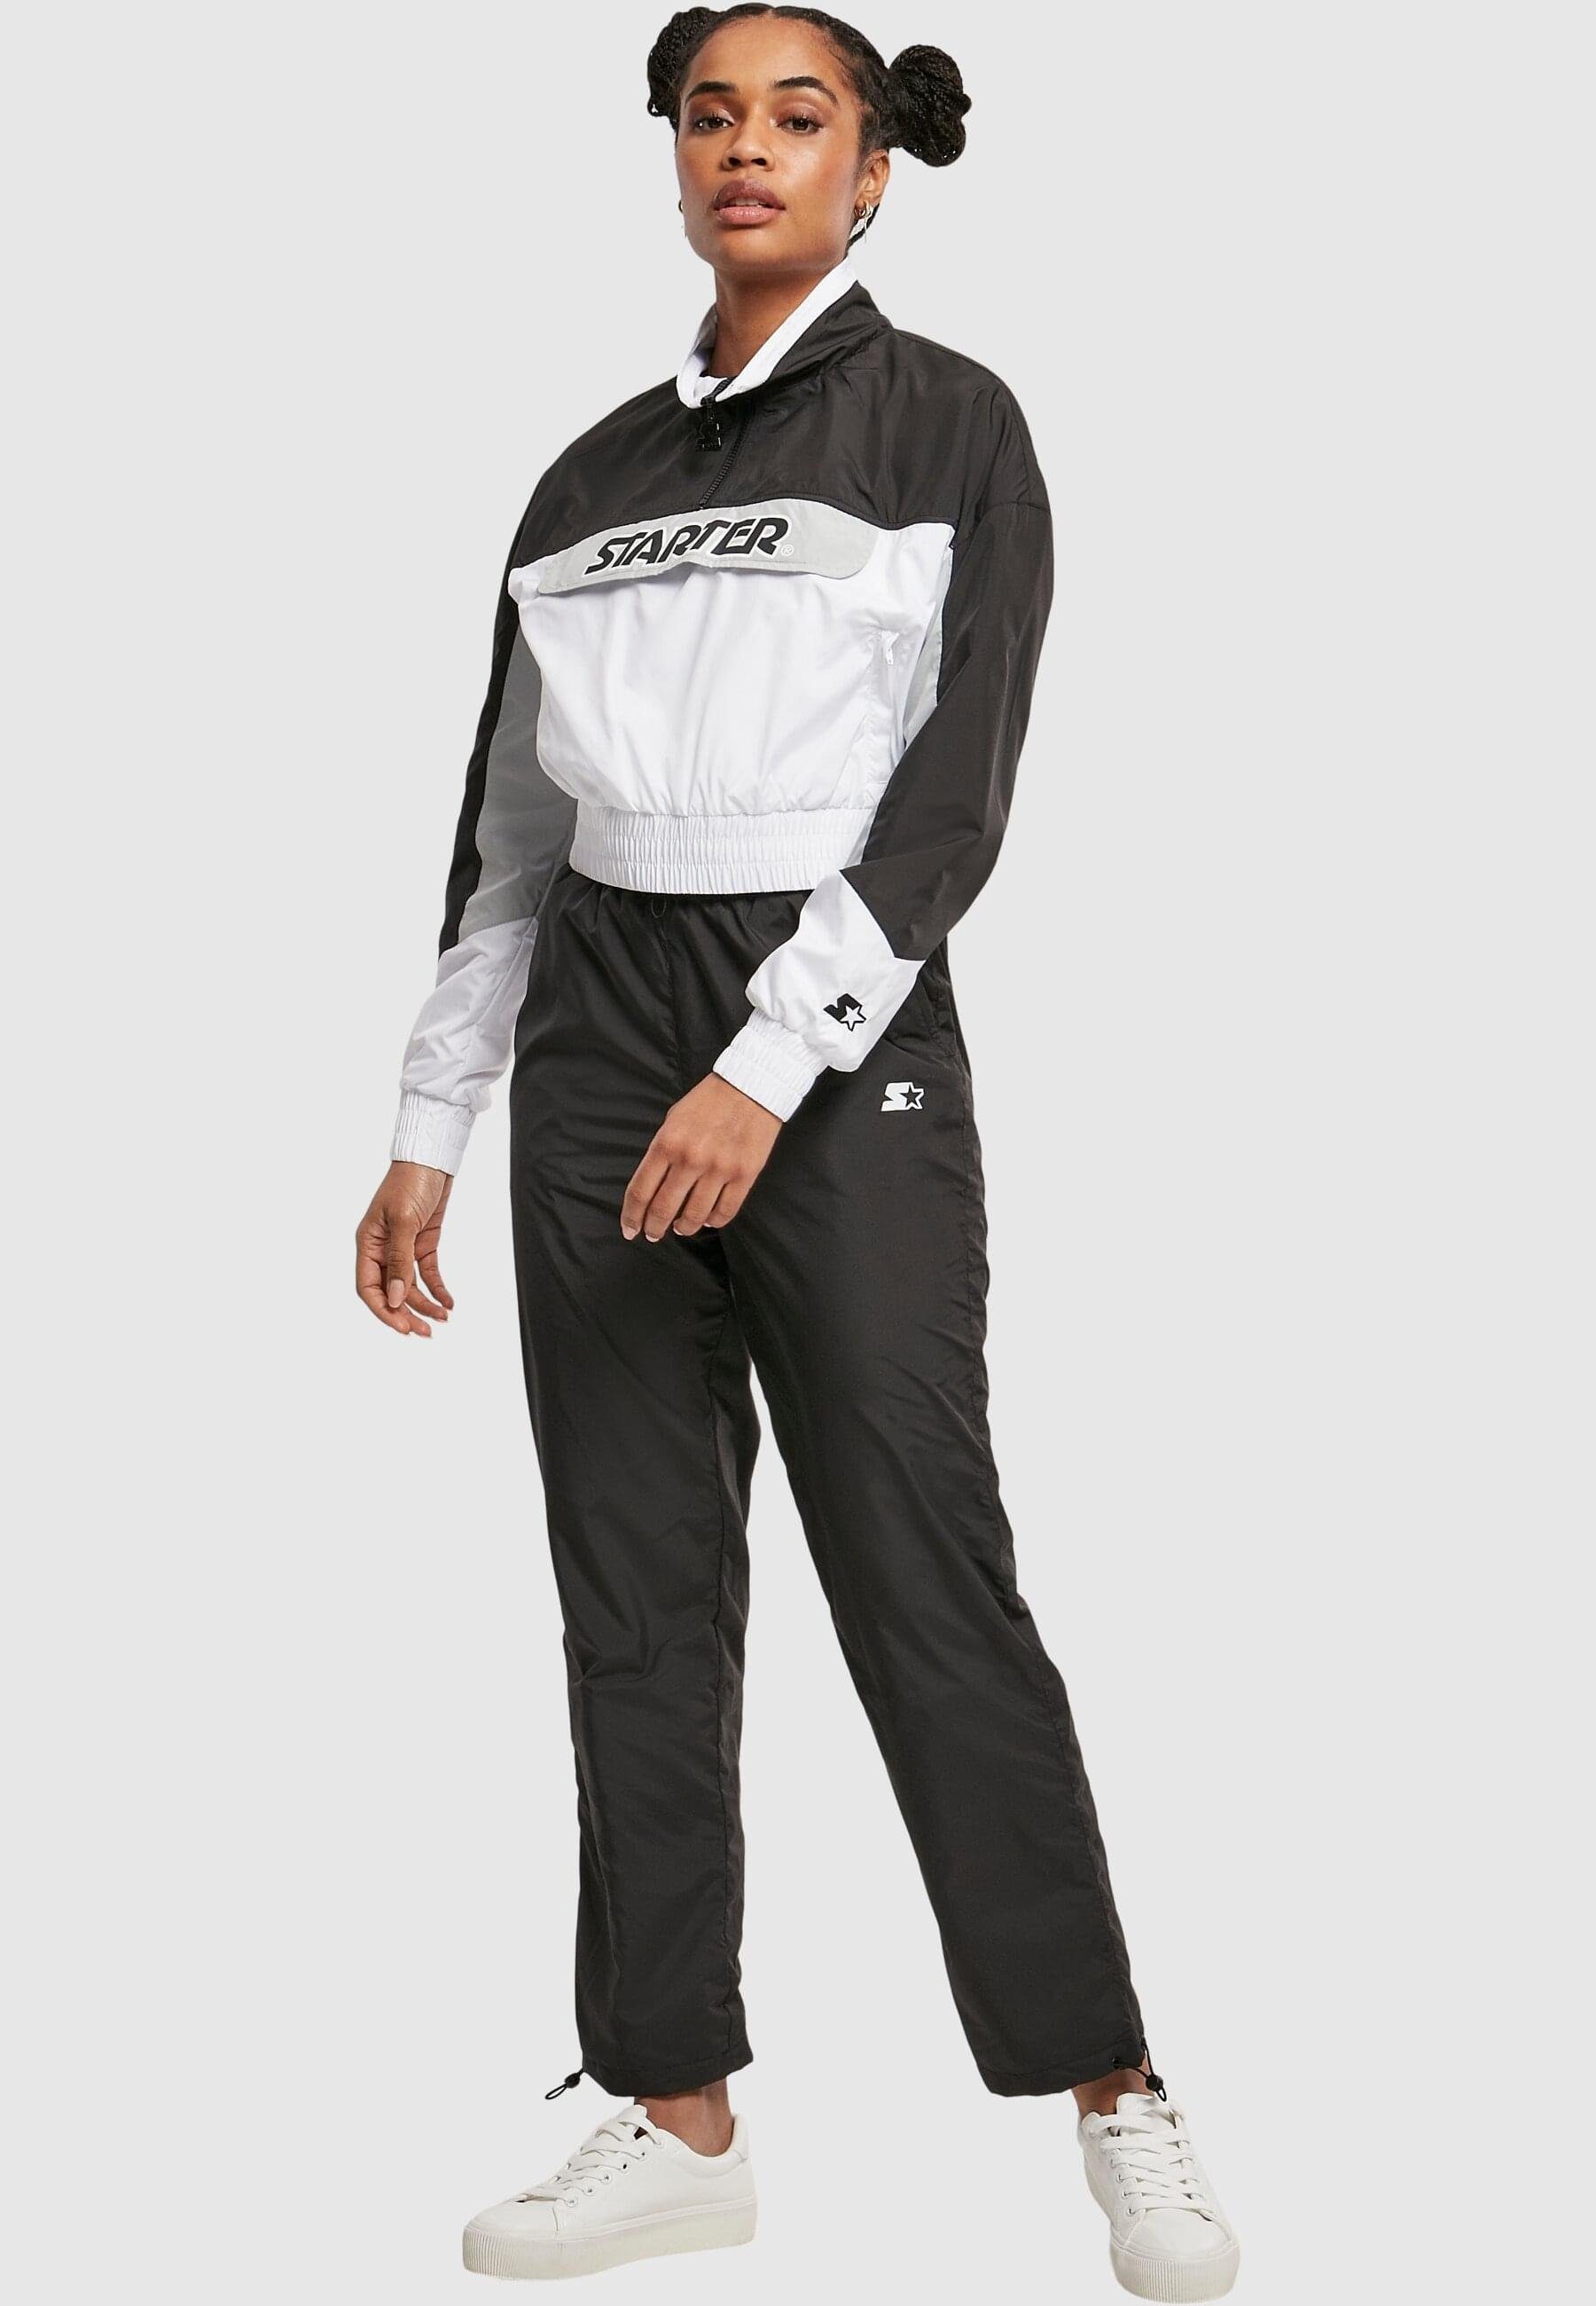 Starter Ladies Label Over black/white Jacket Black Damen Starter Colorblock (1-St) Outdoorjacke Pull